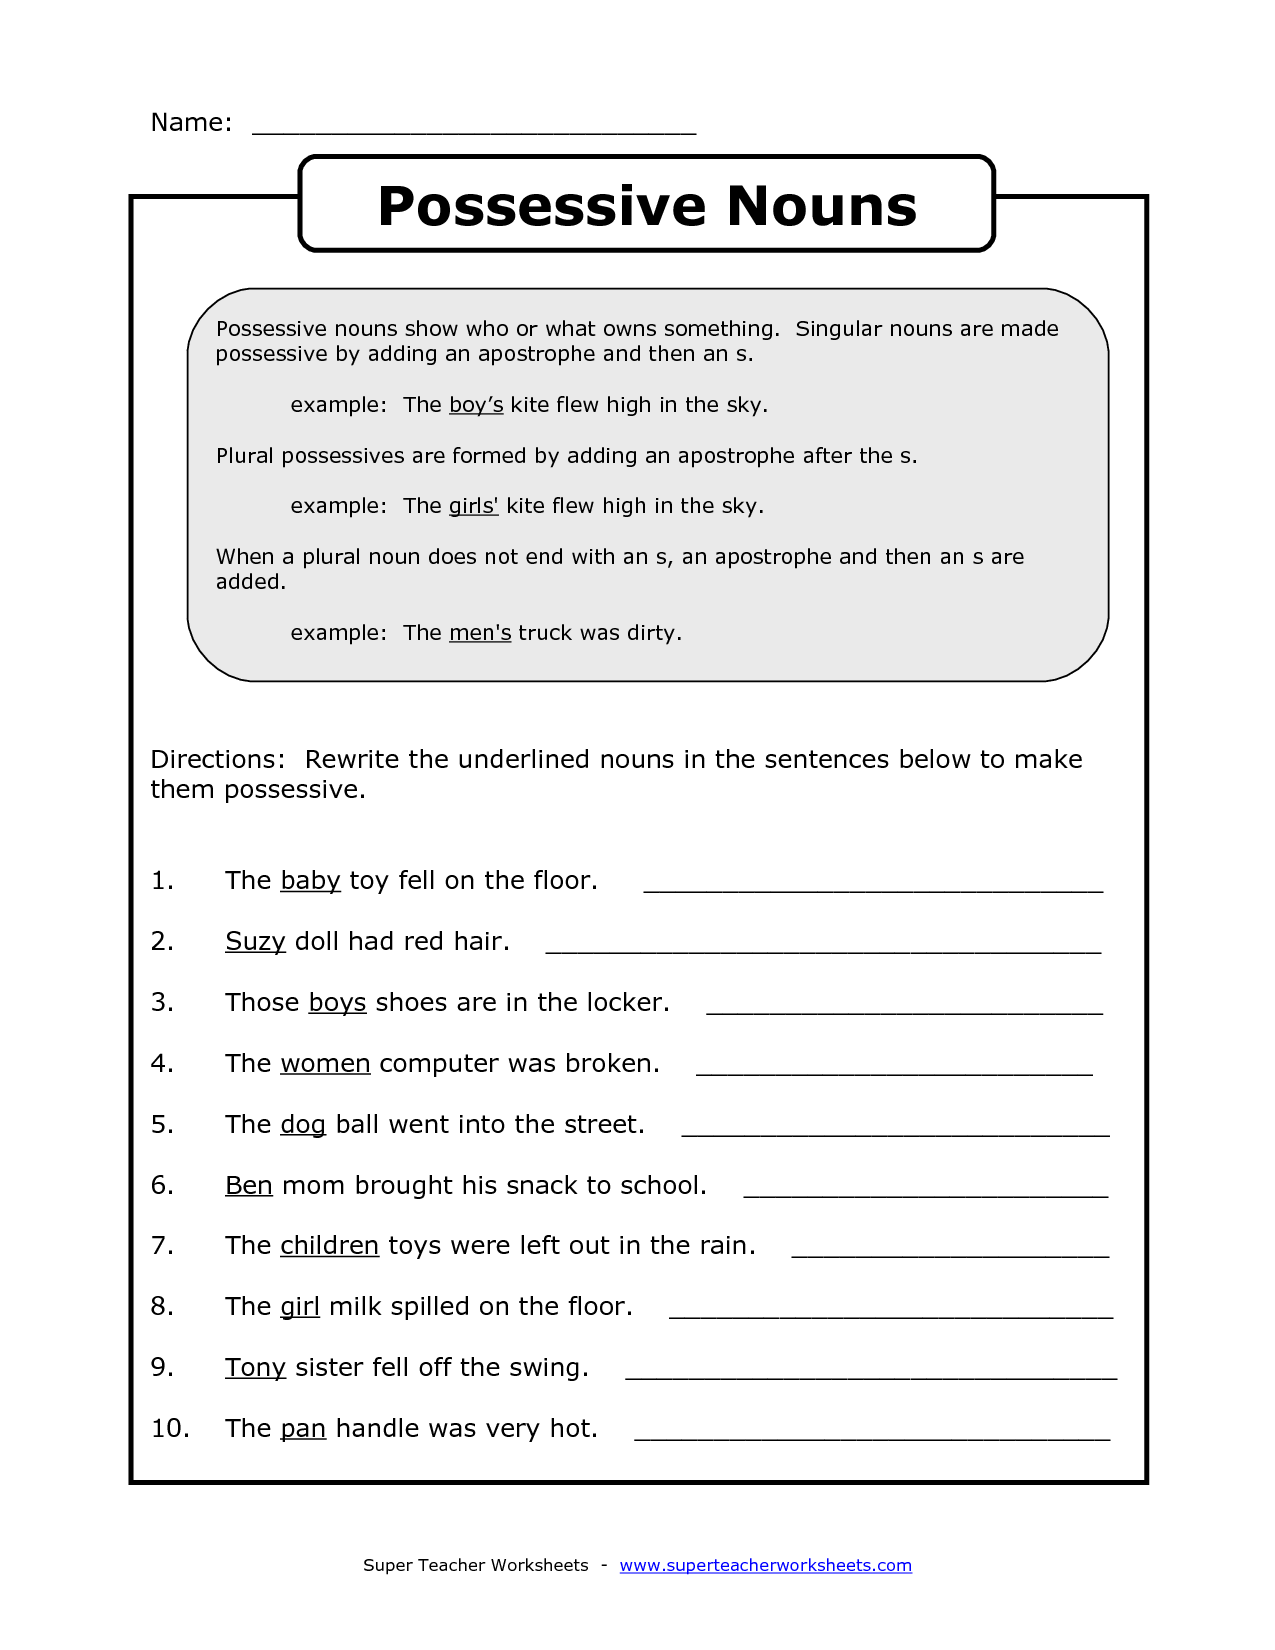 singular-possessive-nouns-worksheet-ms-third-grade-singular-and-plural-possessive-nouns-in-2020